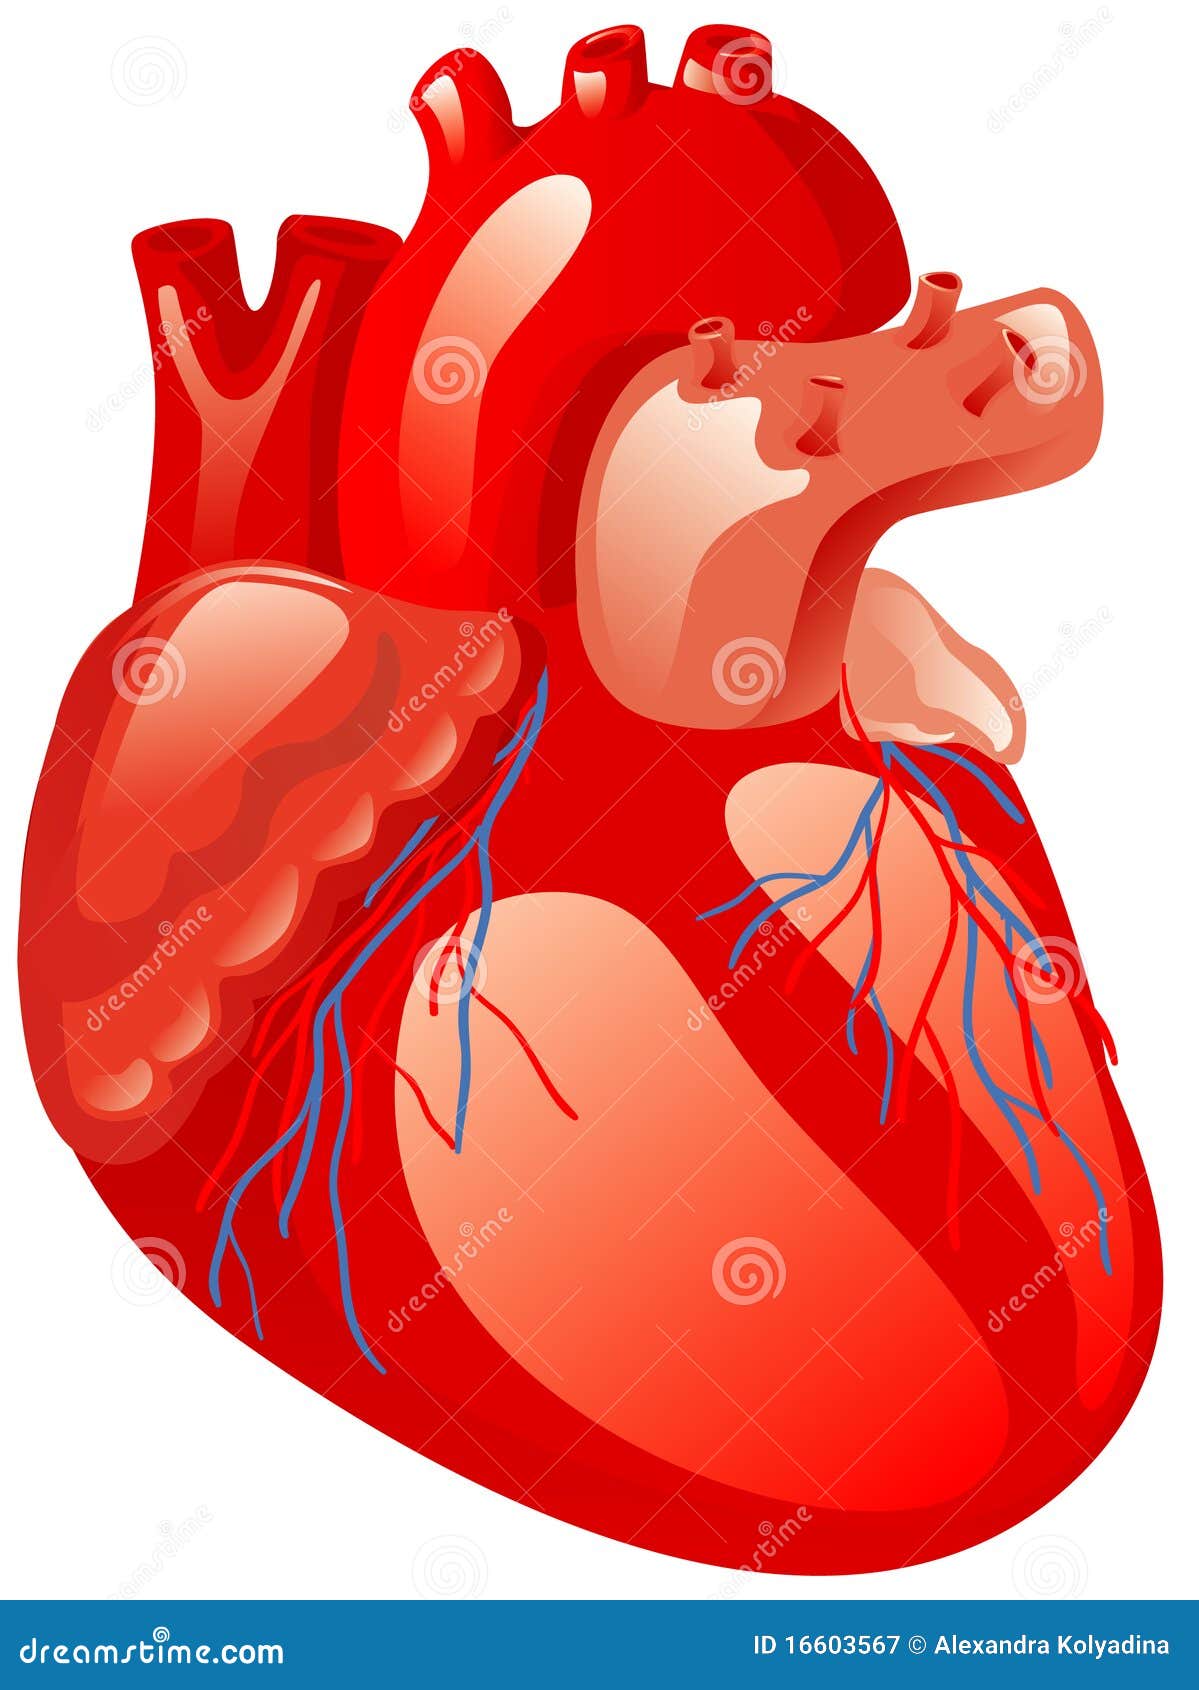 heart organ clipart - photo #26